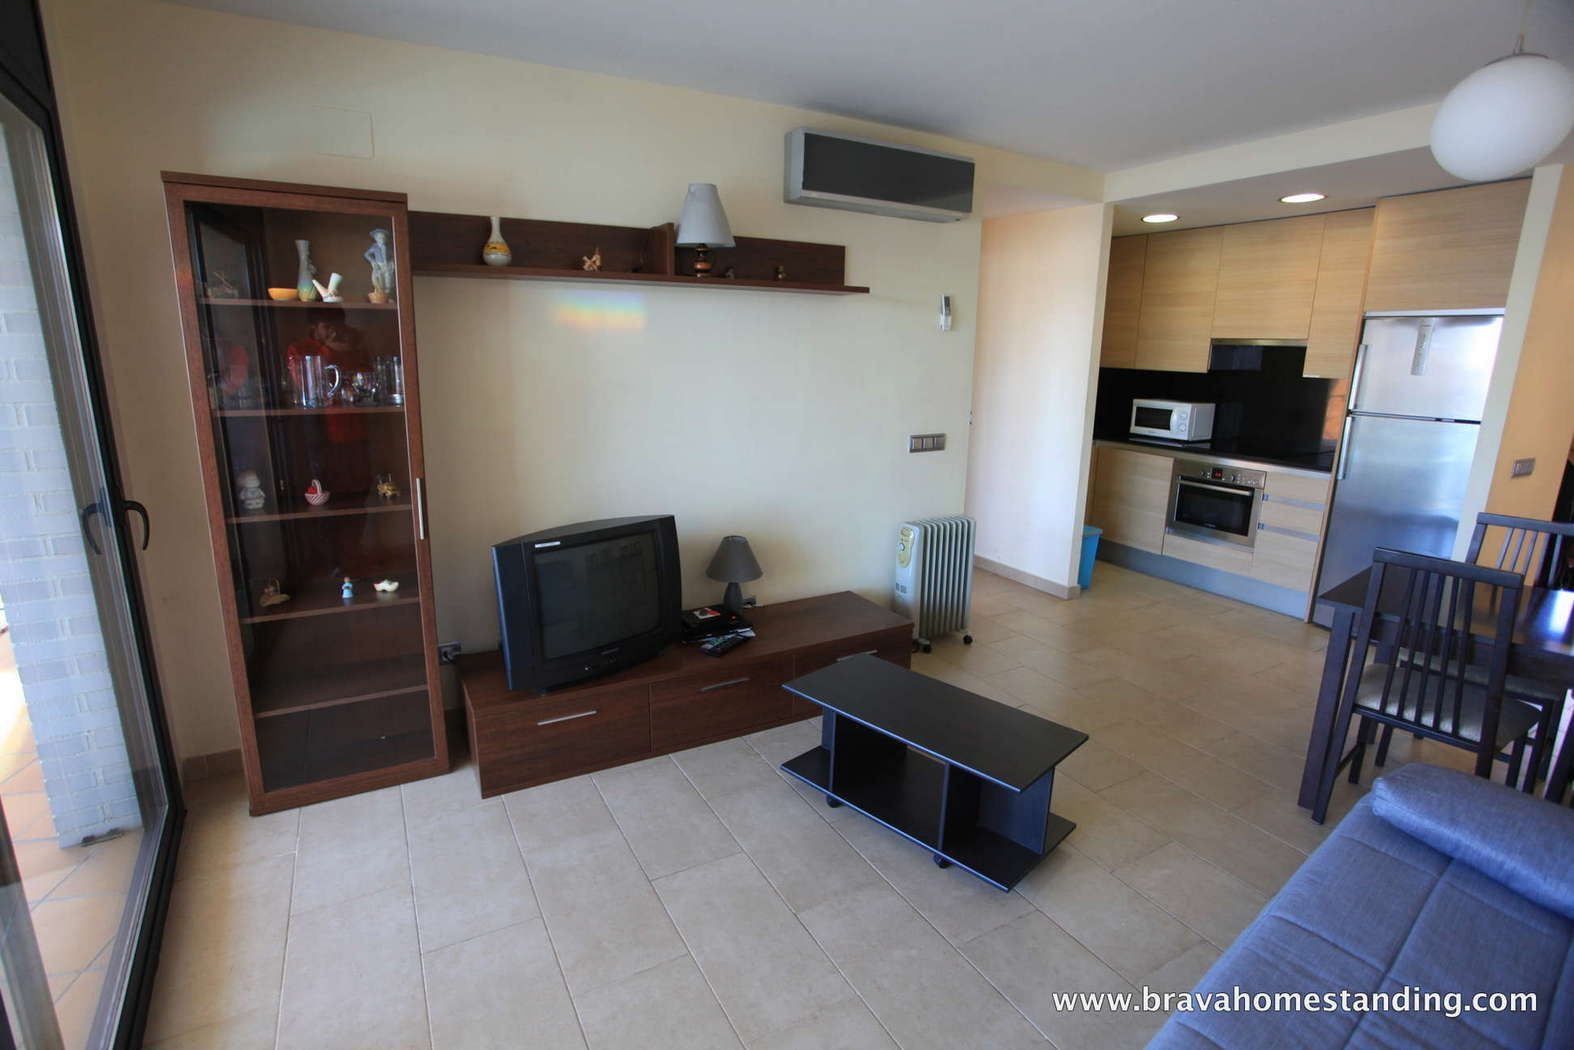 Luxury apartment located in Santa Margarita - Rosas, for sale